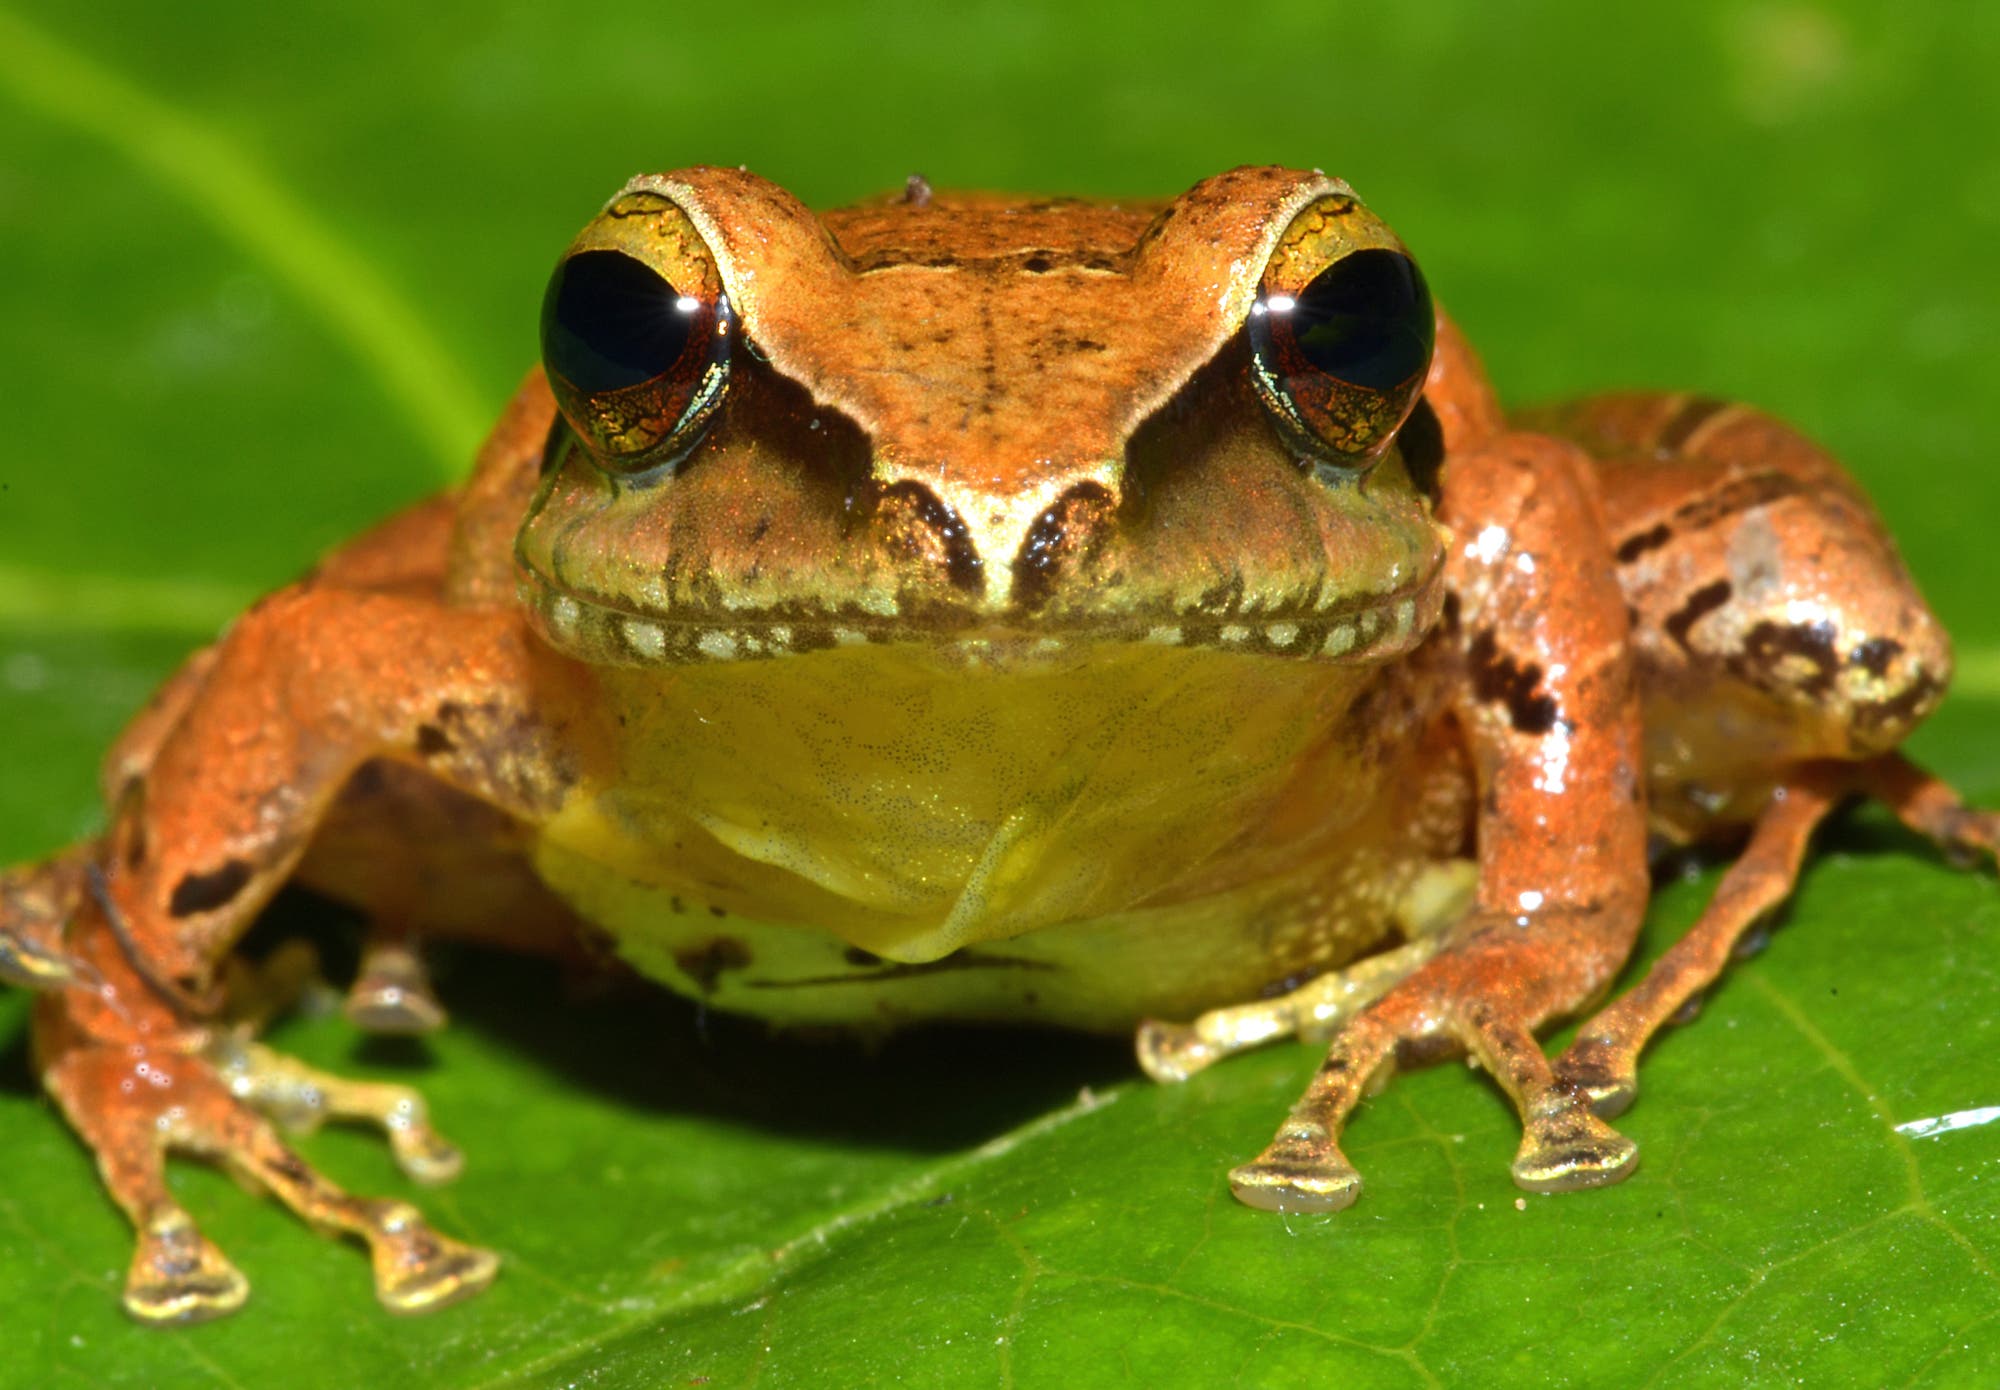 Der Frosch Pristimantis nebulosus hat einen orangefarbenen Rücken und einen gelben Bauch.